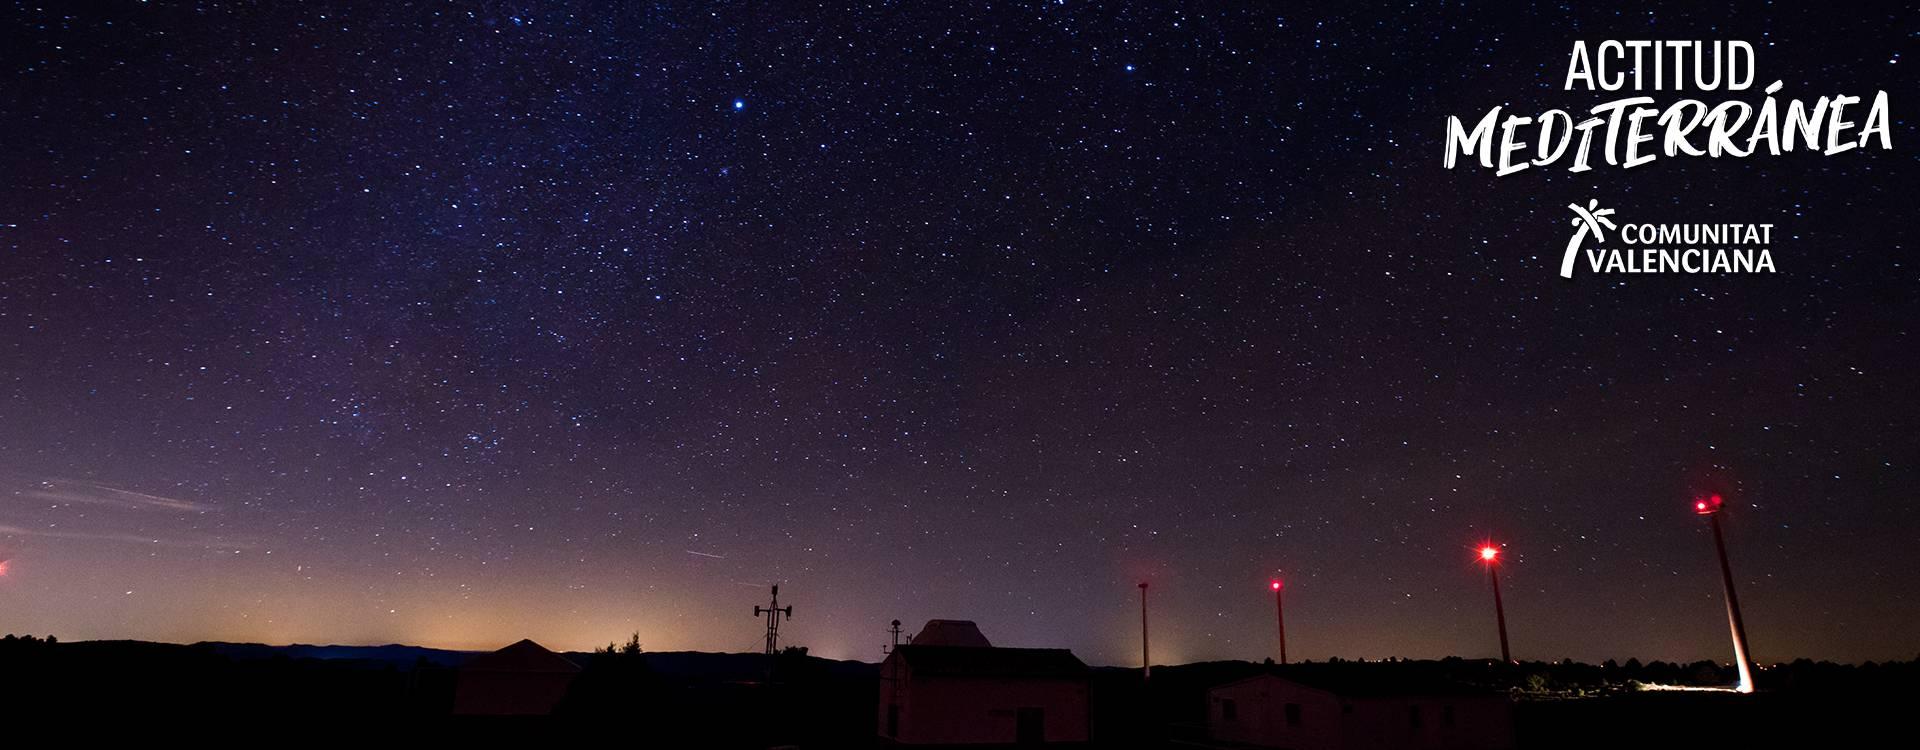 Imagen astroturismo de una noche estrellada